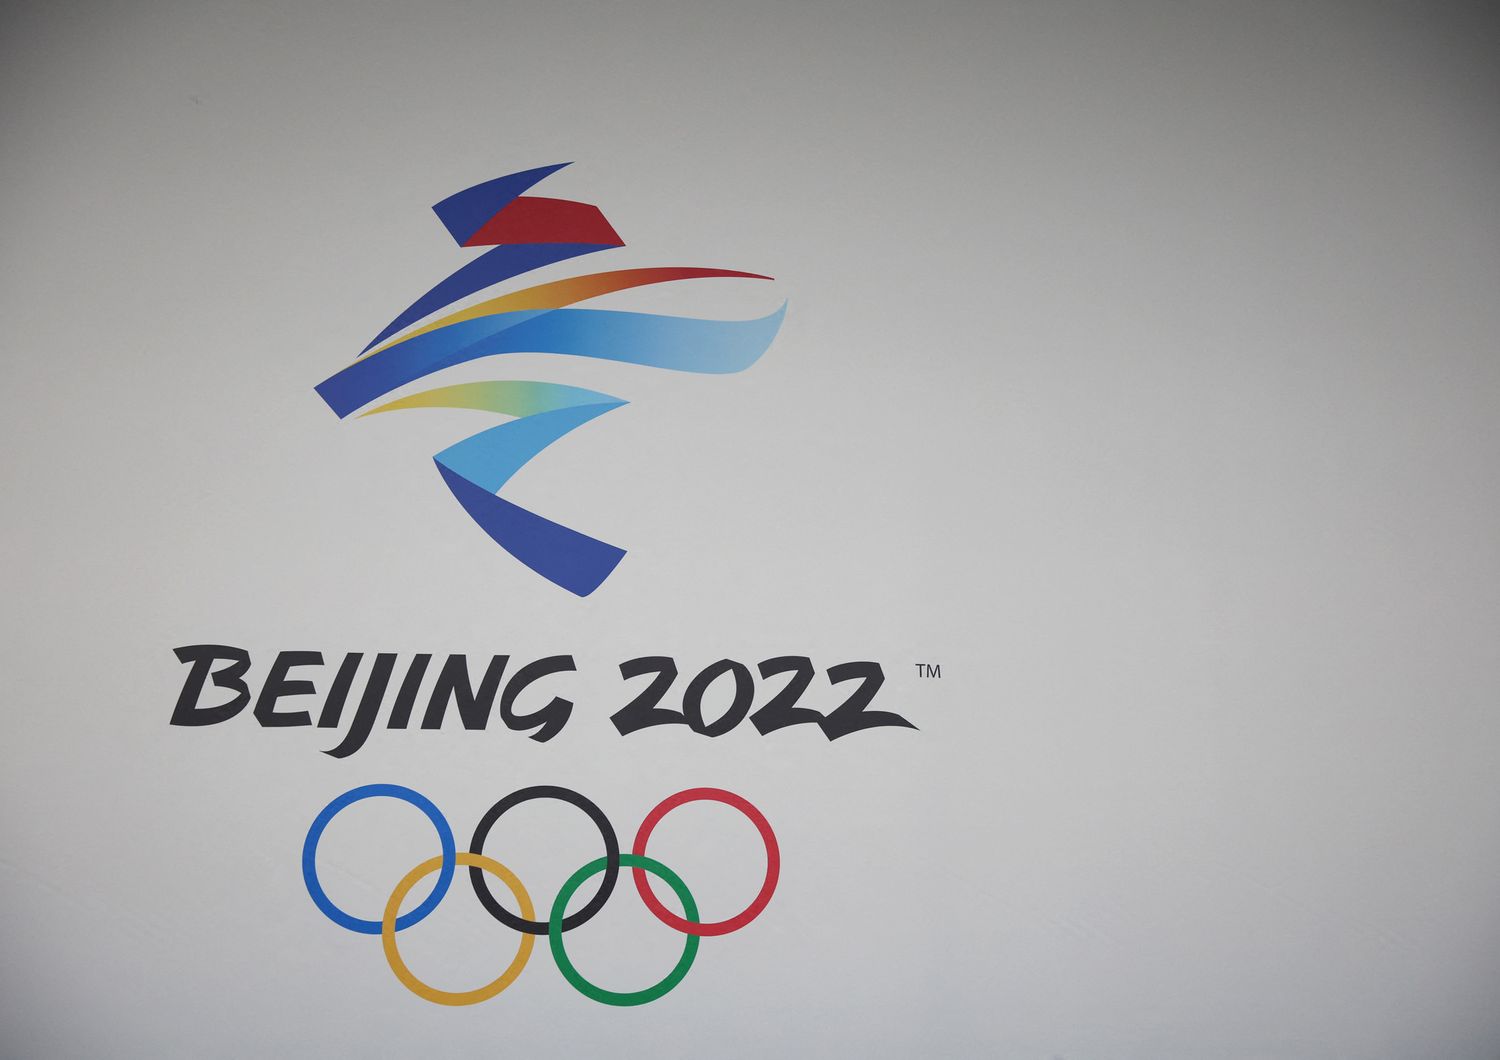 Pechino 2022 domani via Gioch